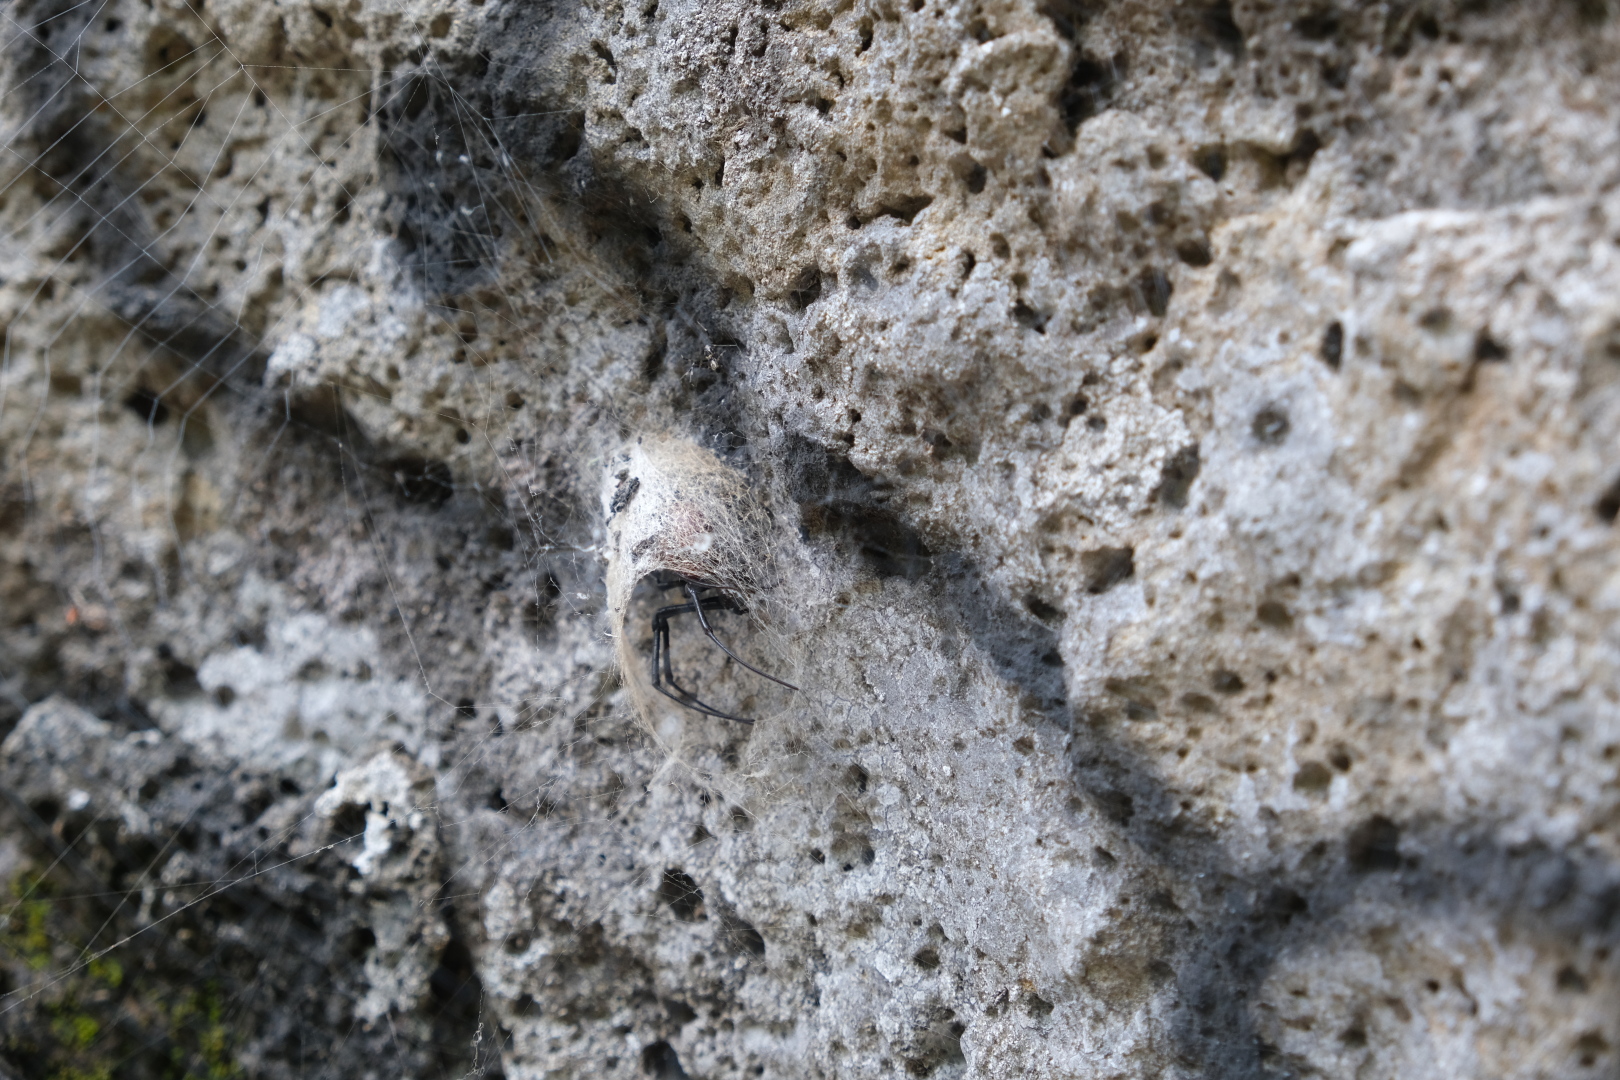 Diese dekorativen Spinnen lauern überall am Fels auf Beute. Ihr Hinterlaib misst etwa 1cm im Durchmesser. Alle Spinnen auf Réunion sind für Menschen völlig ungefährlich.